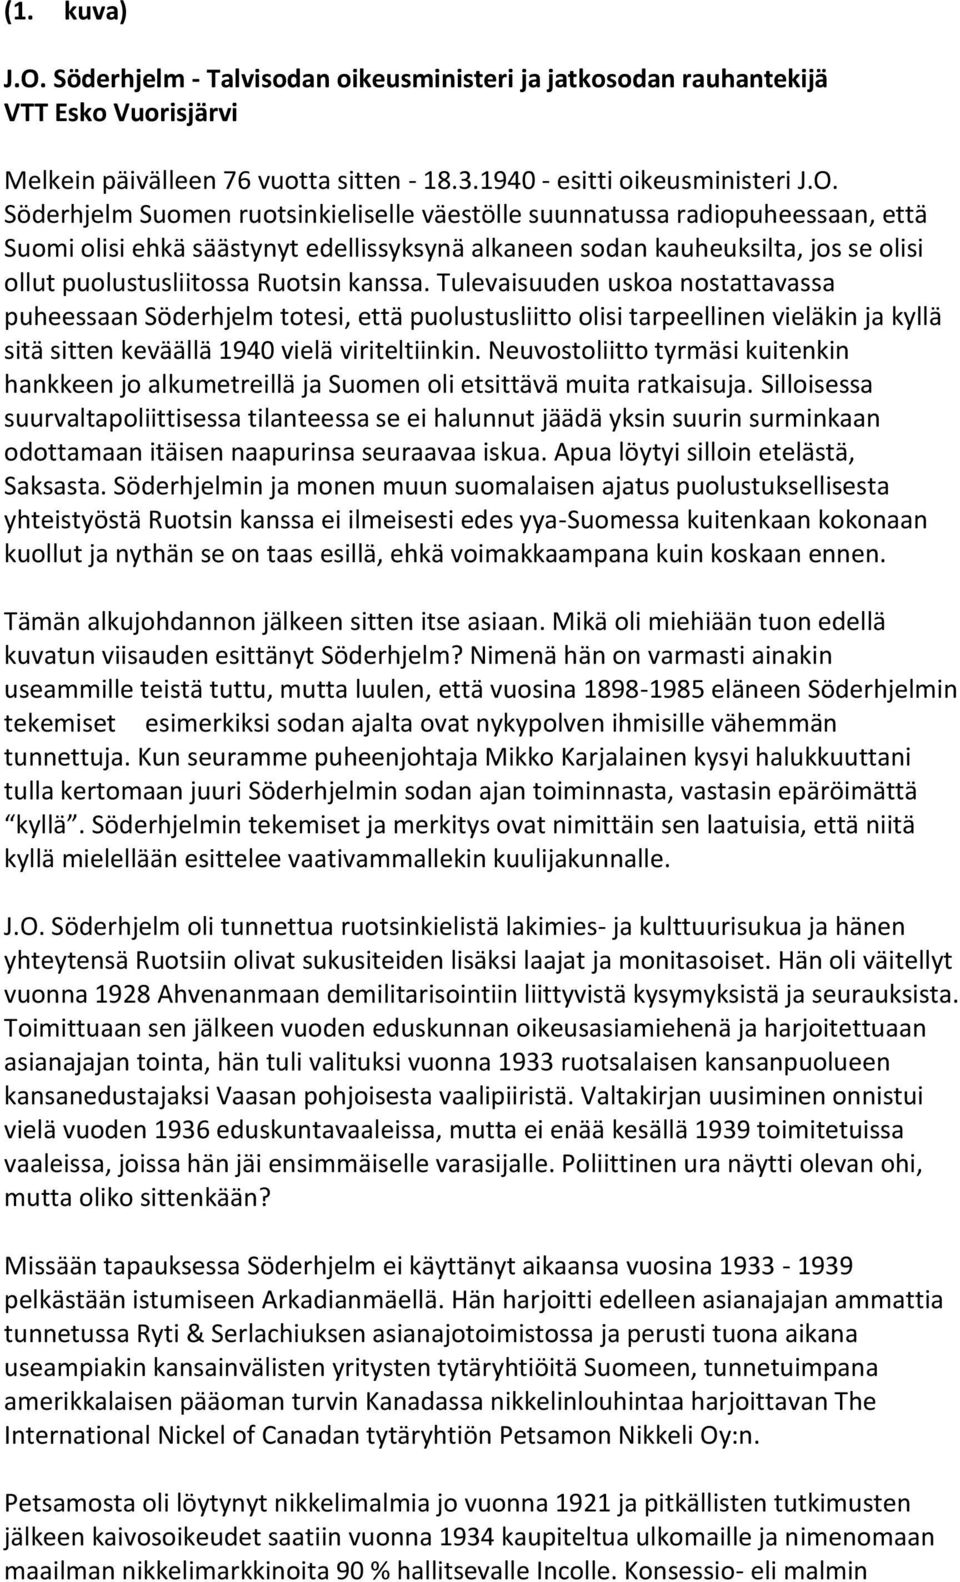 Söderhjelm Suomen ruotsinkieliselle väestölle suunnatussa radiopuheessaan, että Suomi olisi ehkä säästynyt edellissyksynä alkaneen sodan kauheuksilta, jos se olisi ollut puolustusliitossa Ruotsin